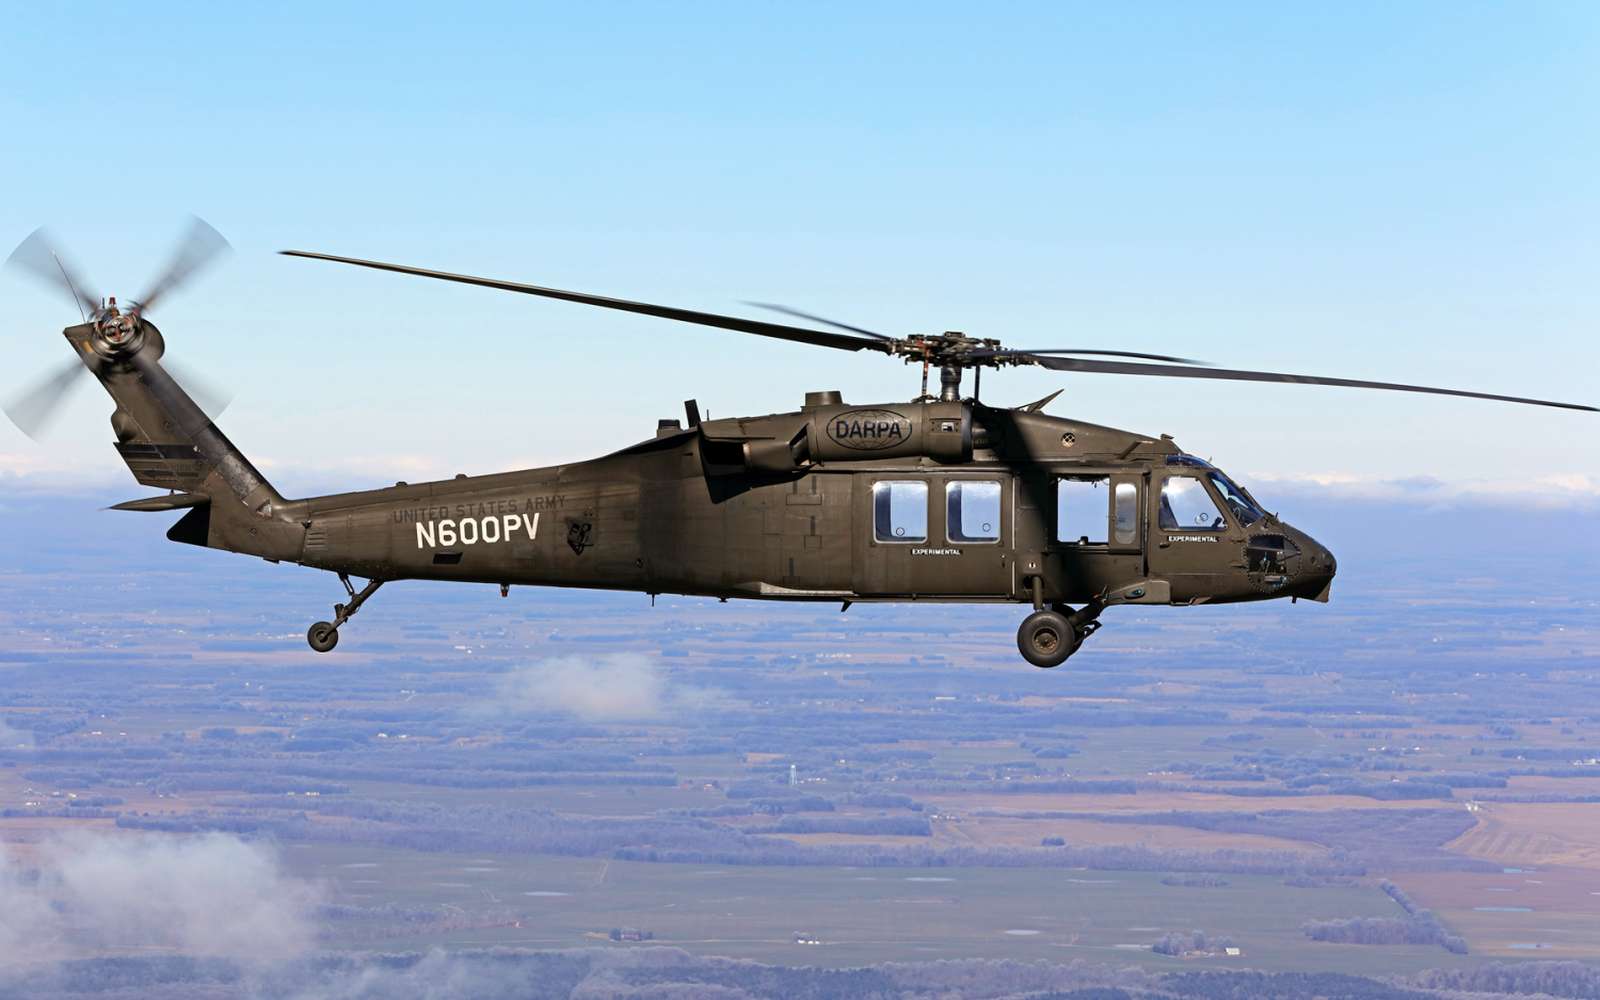 Le célèbre hélicoptère Black Hawk a réussi sa première opération de sauvetage sans pilote